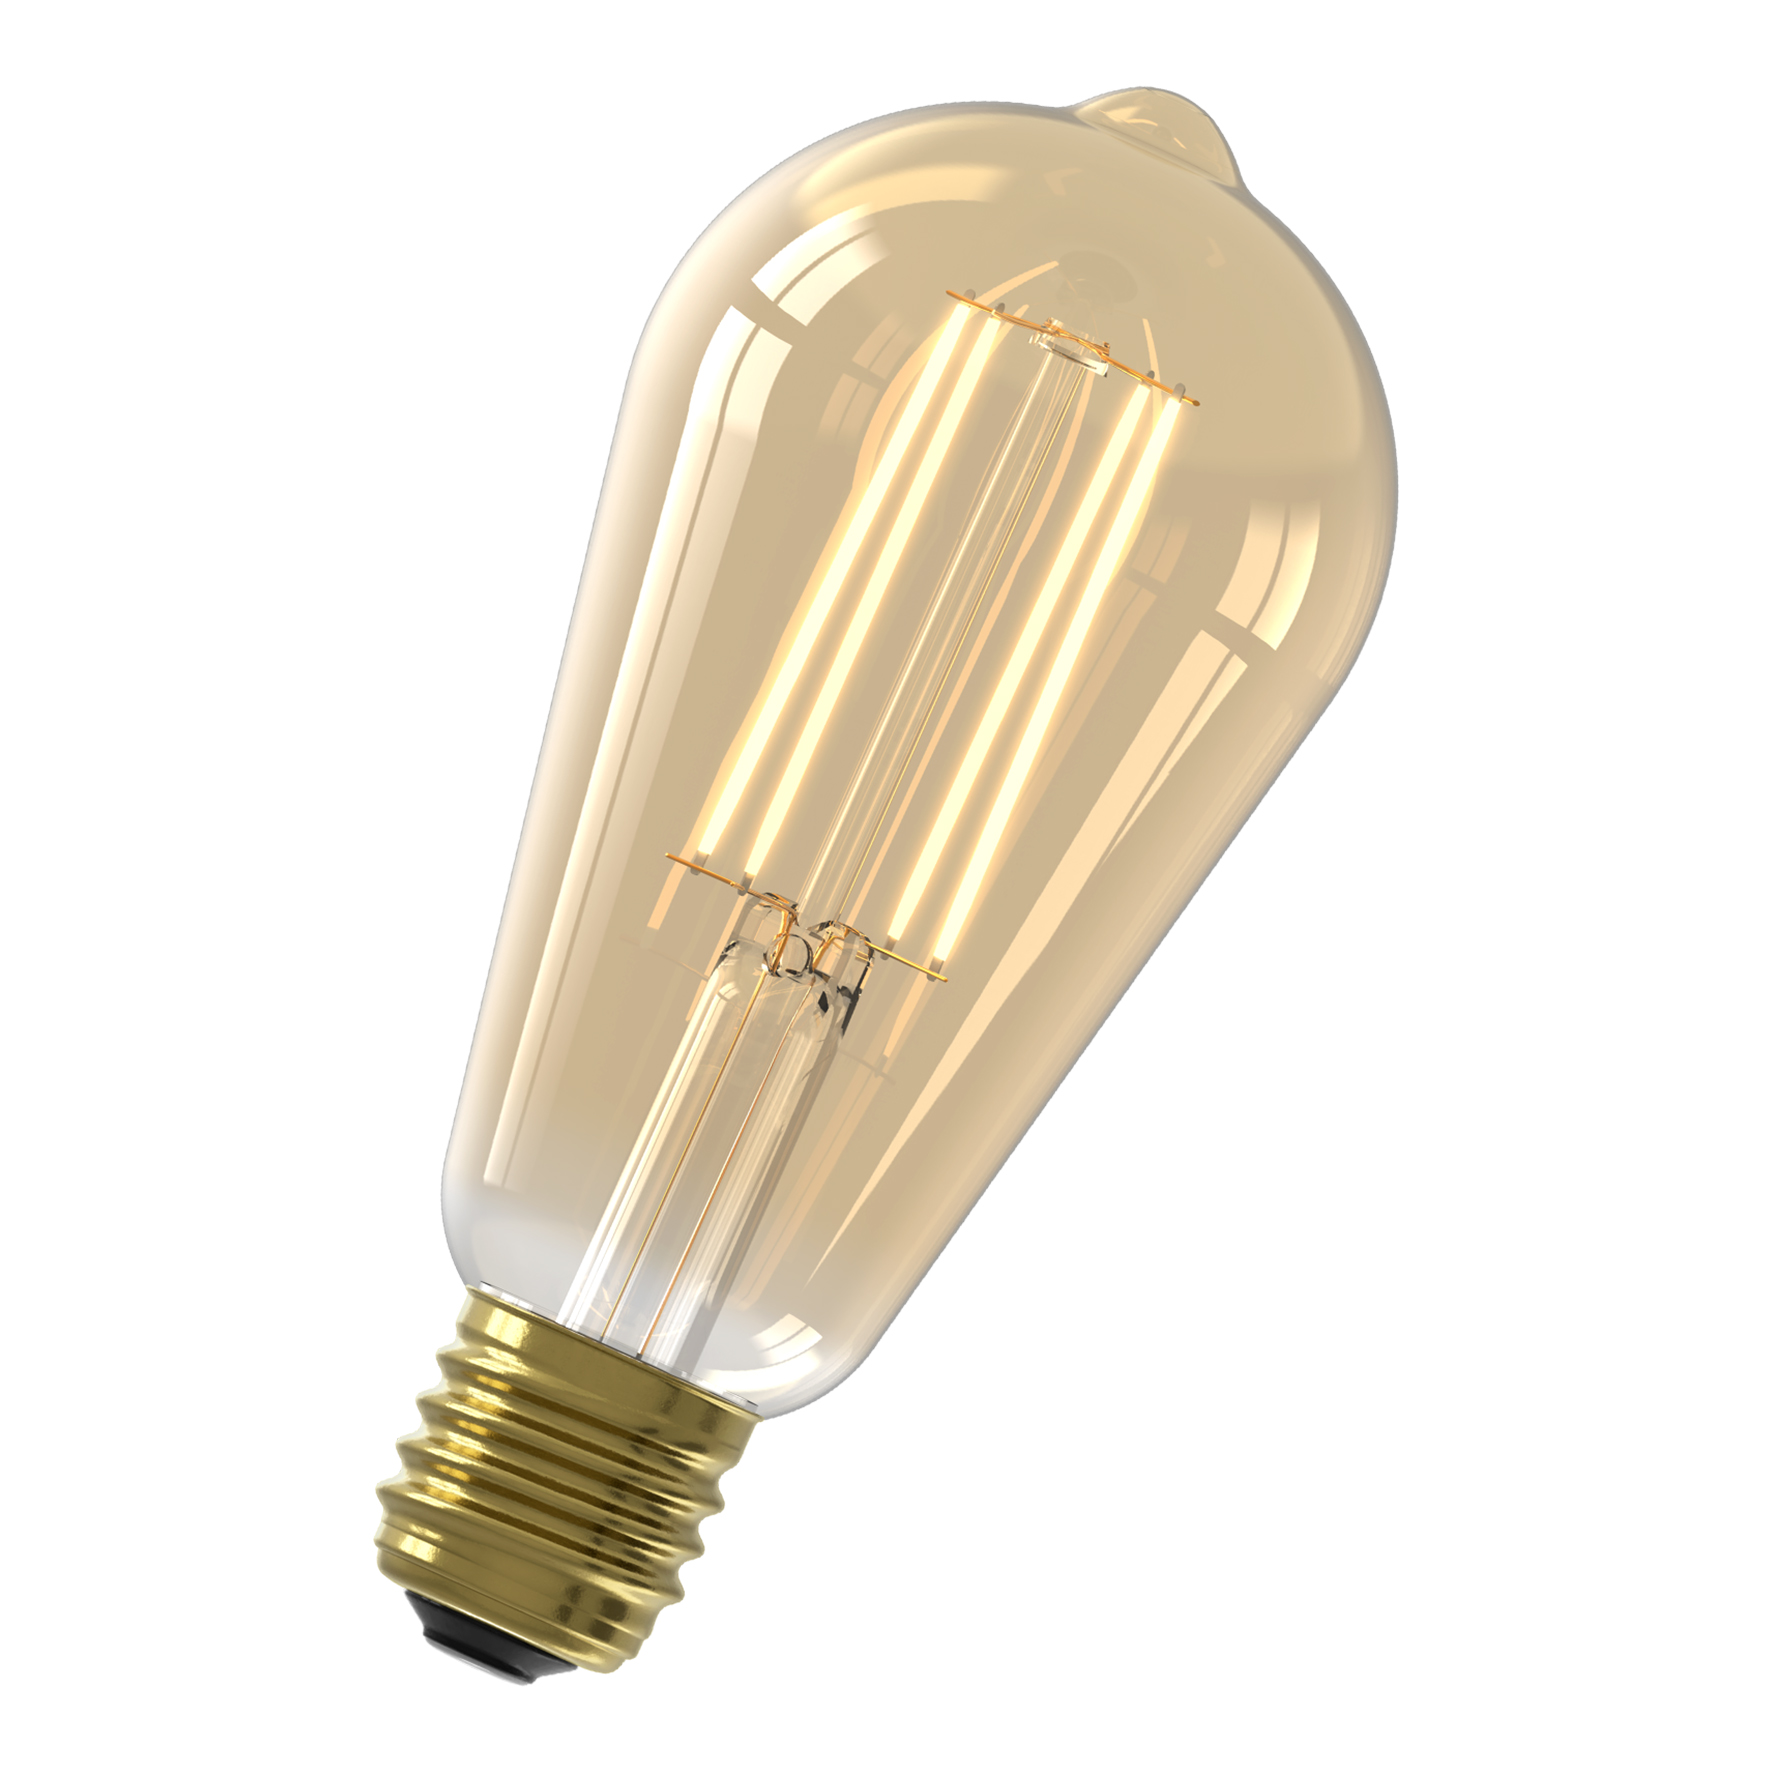 LED Long Fil ST64 E27 DIM 3.5W (25W) 250lm 2100K Gold